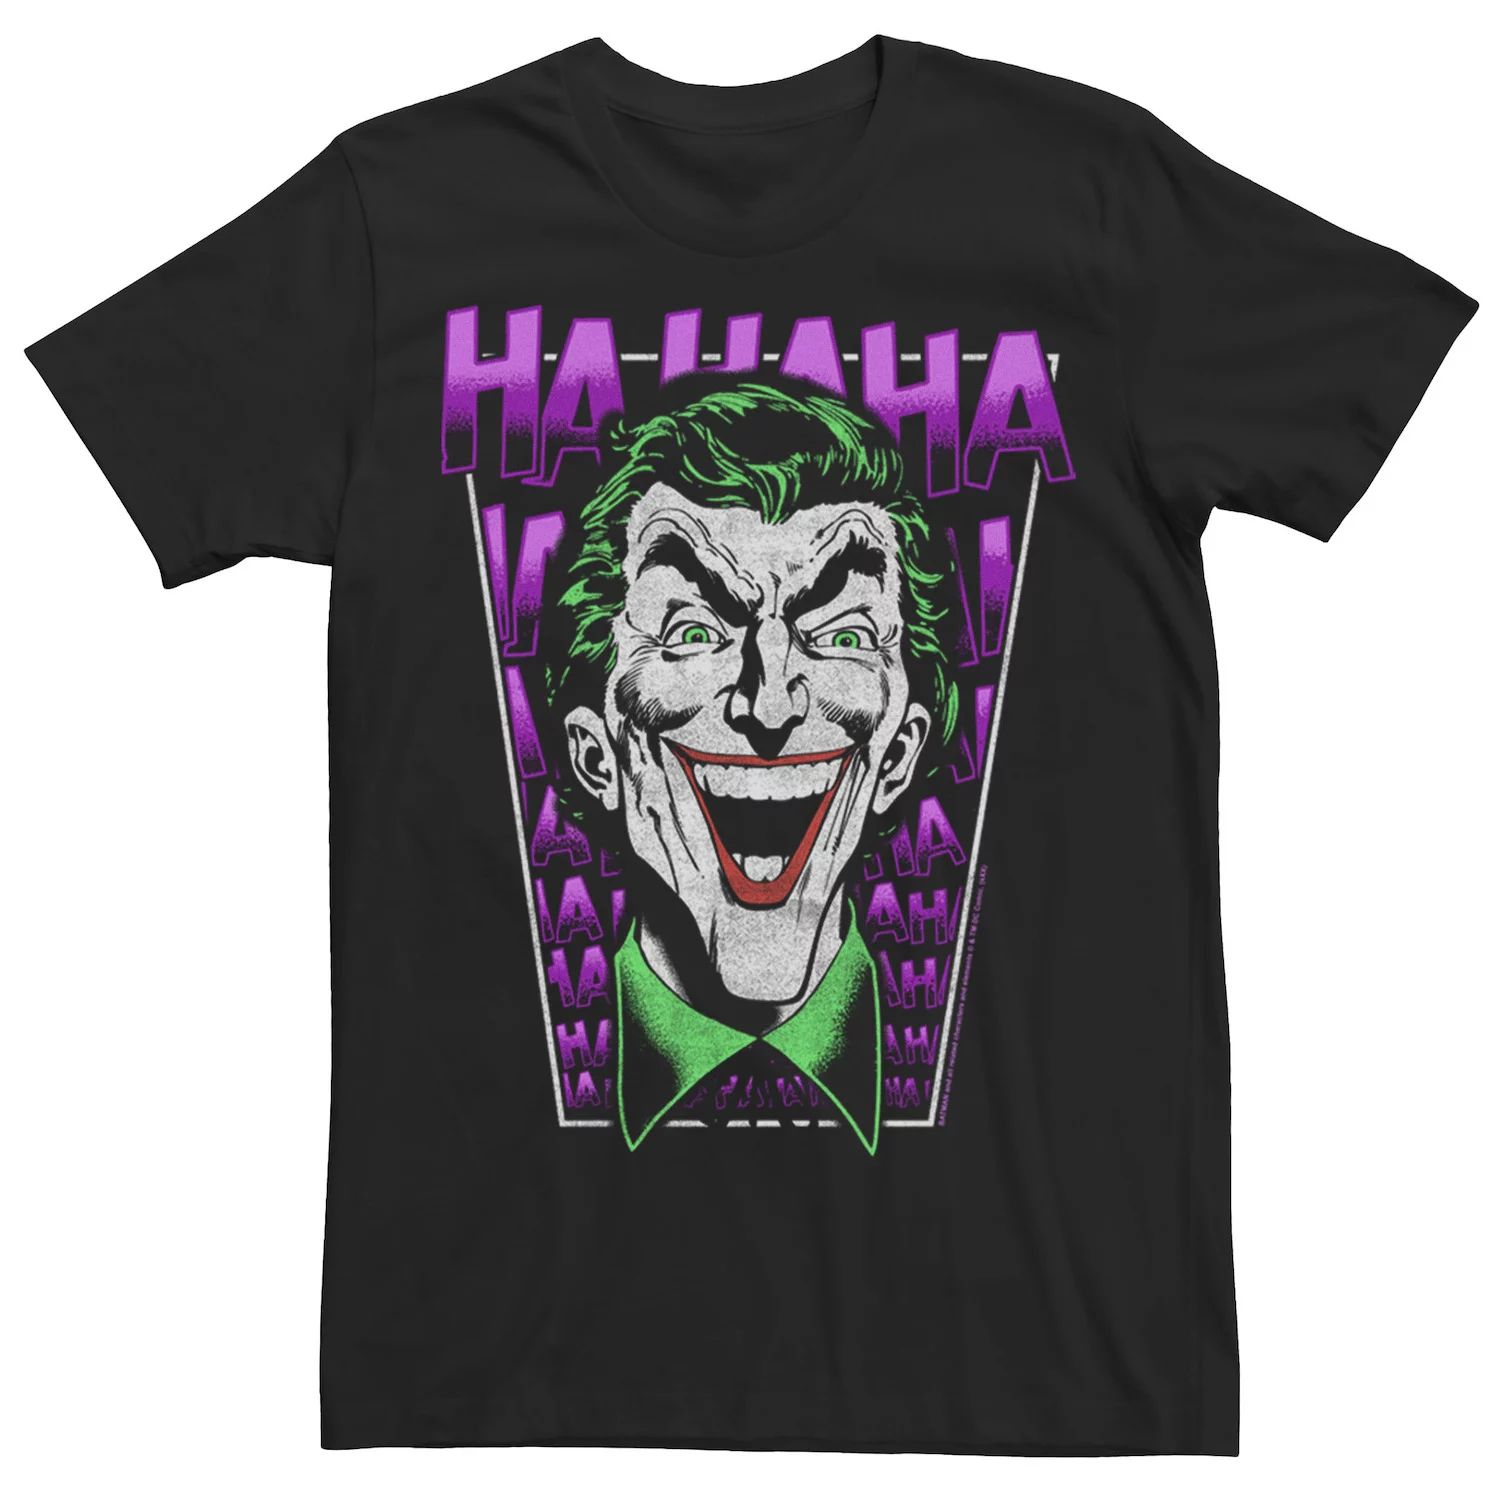 Мужская футболка DC Comics Batman Joker HA HA HA Licensed Character